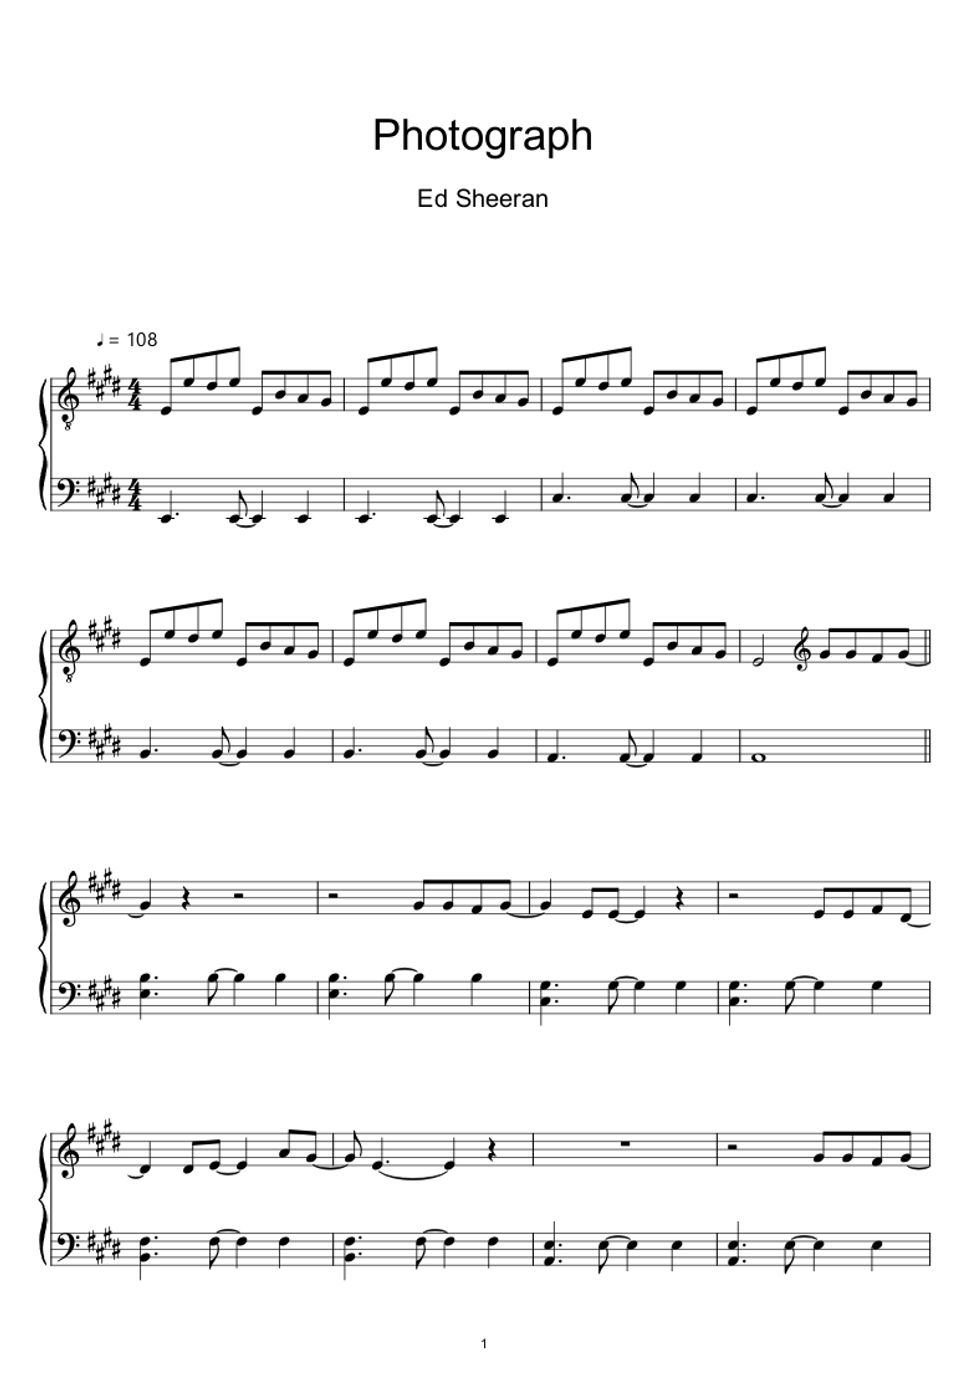 エド・シーラン - フォトグラフ (楽譜, MIDI,) by sayu